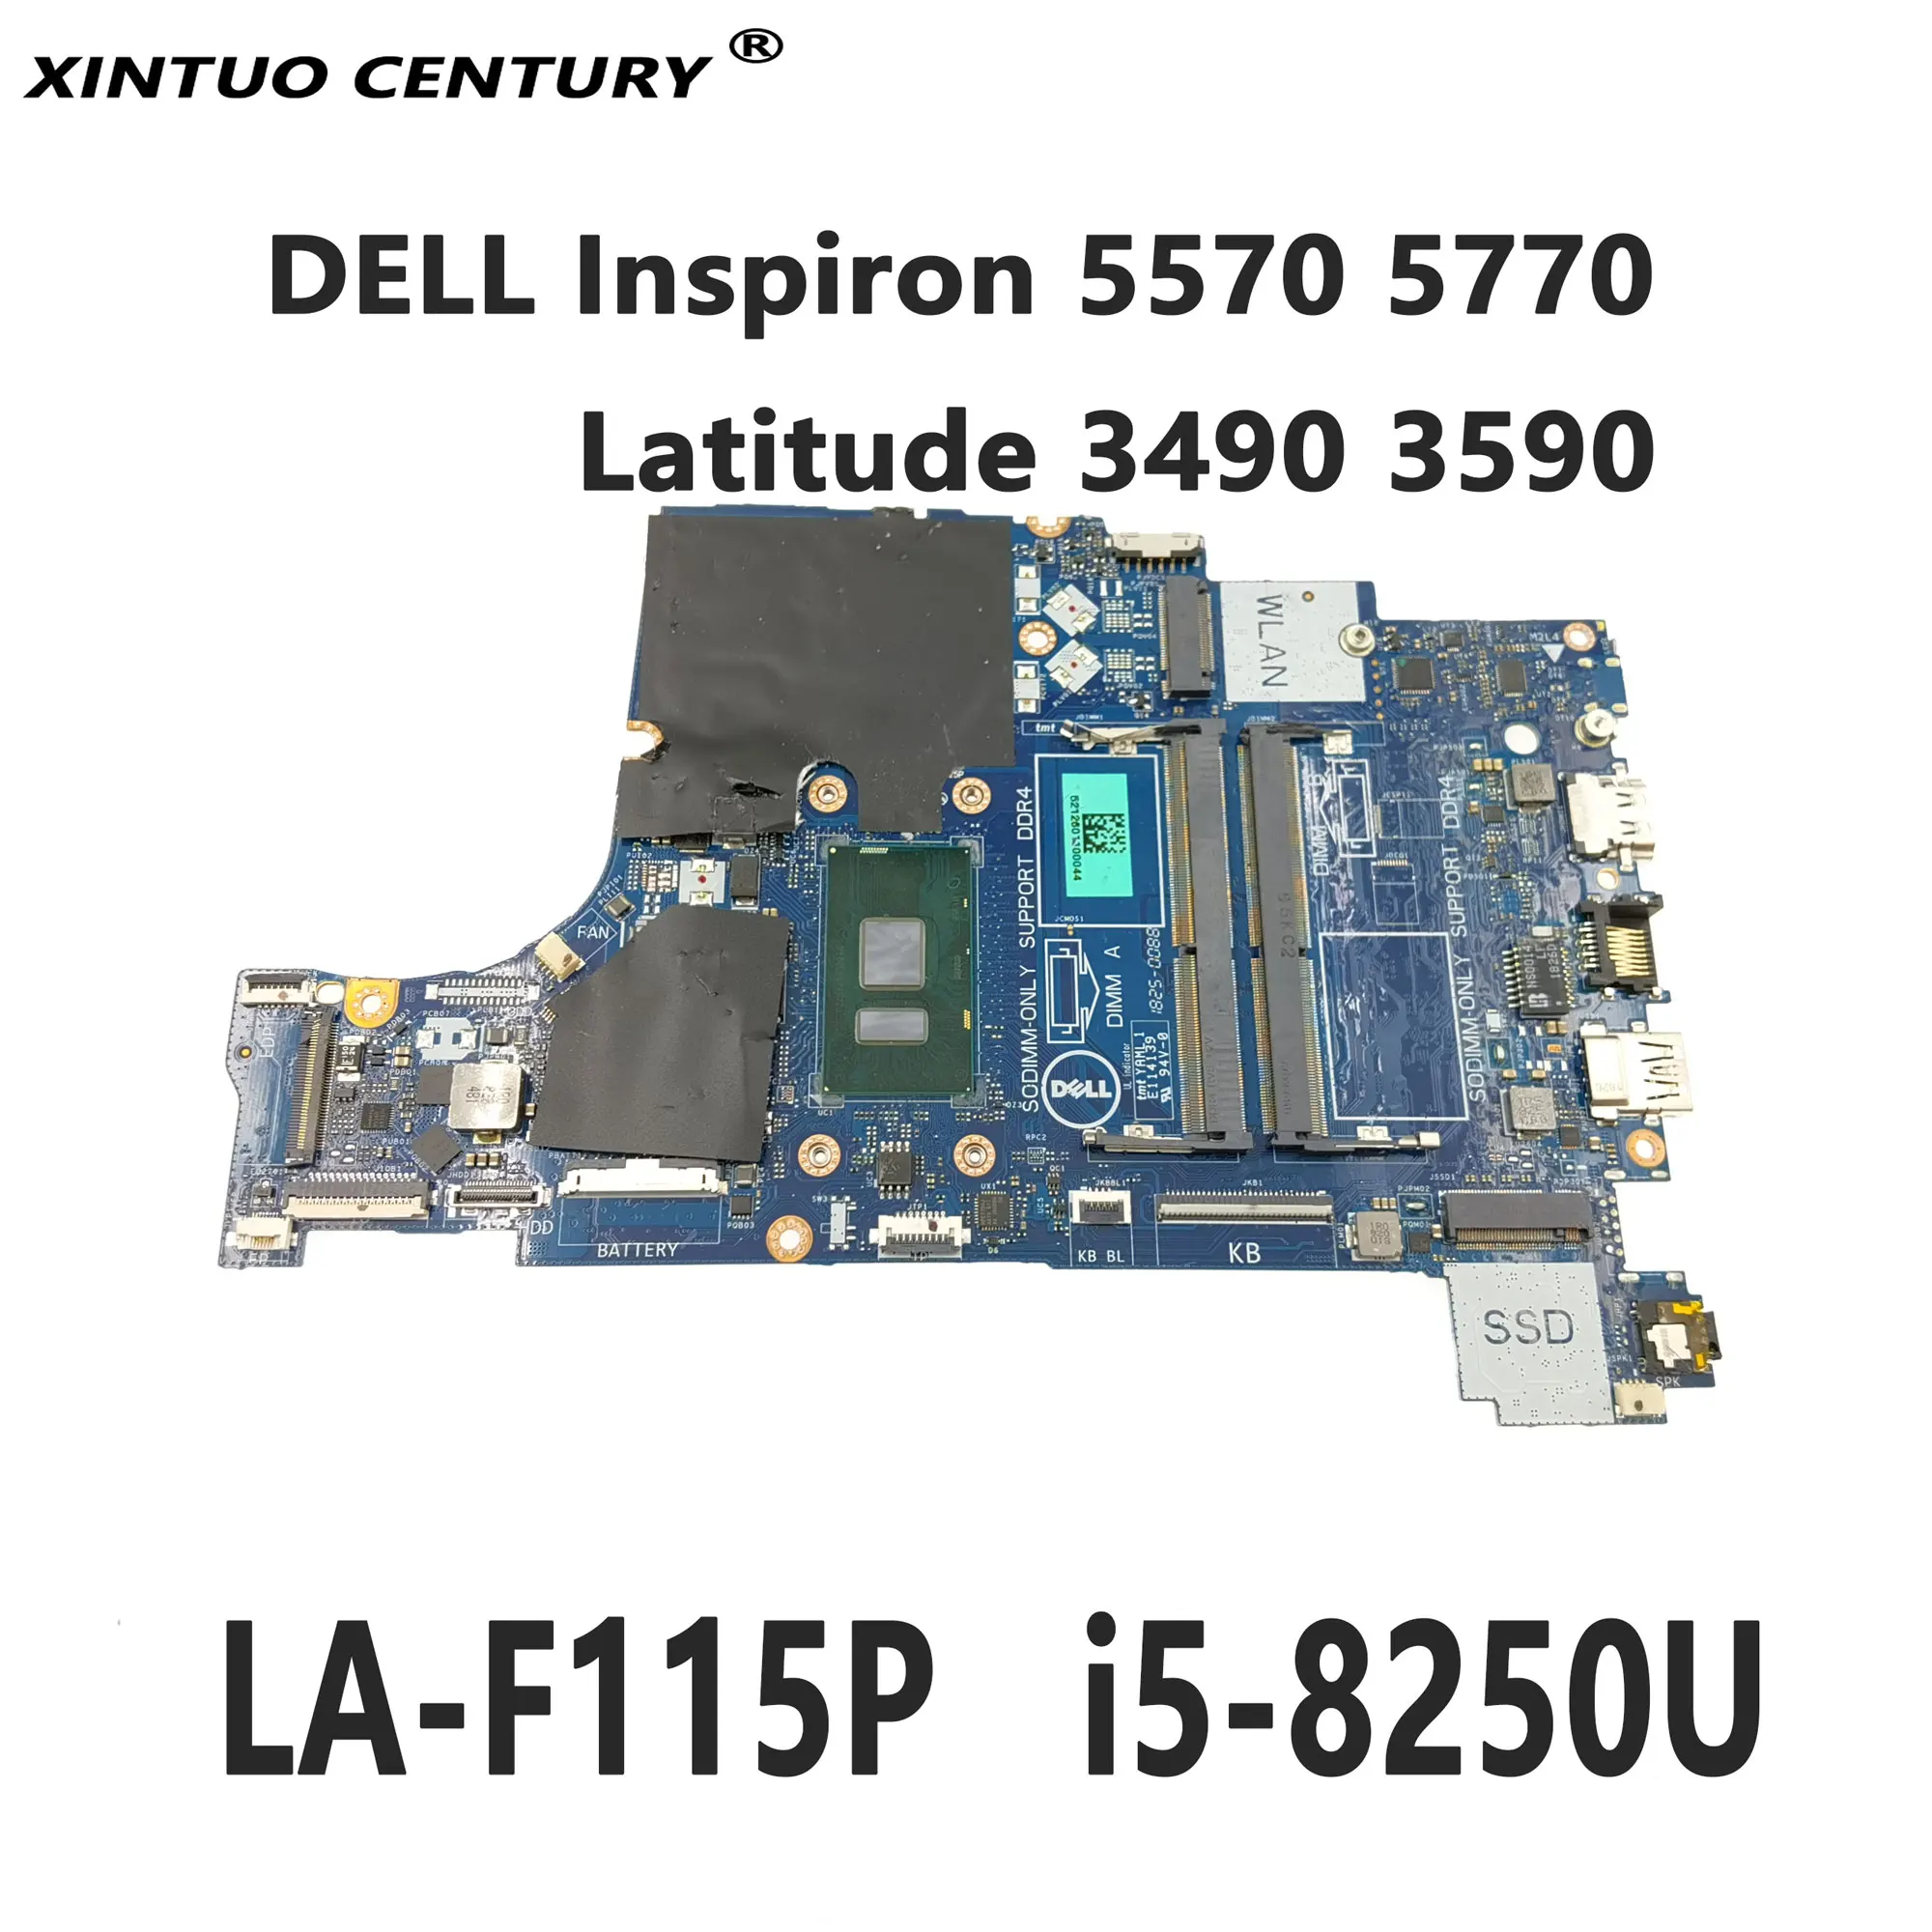 

Материнская плата для ноутбука DELL Inspiron 5570 5770 и Latitude 3490 3590, CAL50 DAL10 LA-F115P с процессором i5-8250U DDR4 100%